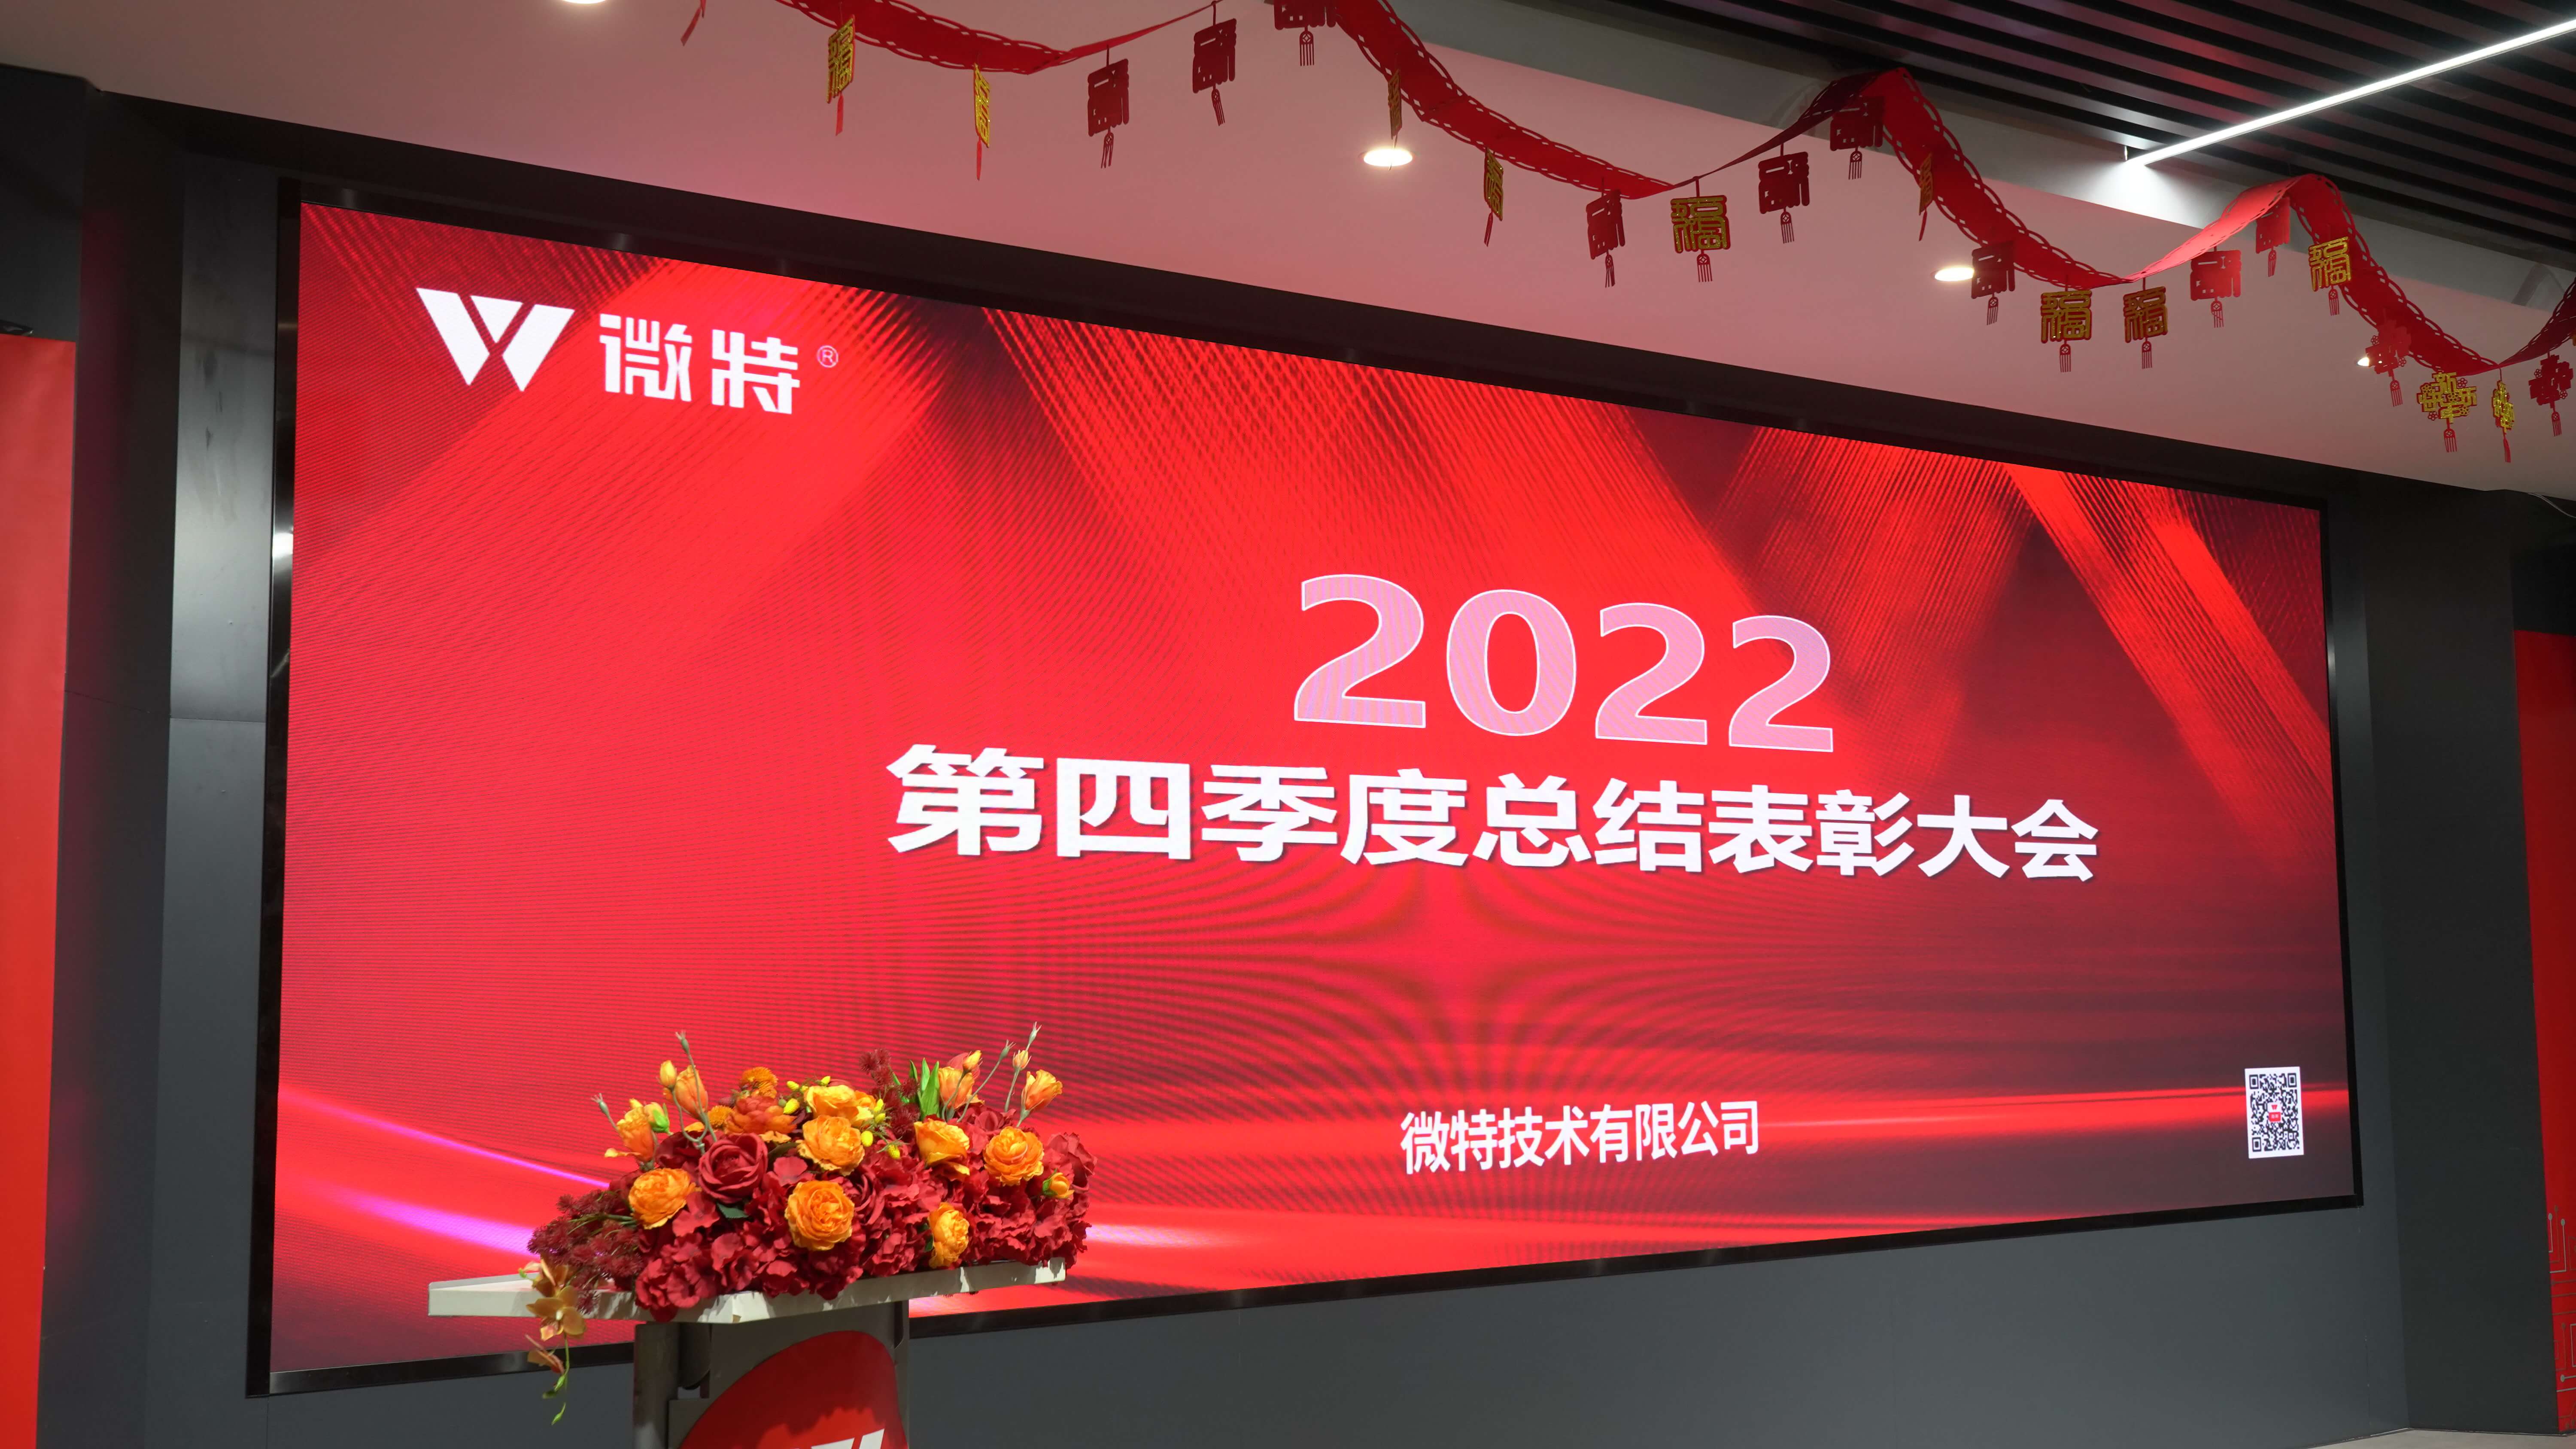 世搏体育平台2022年第四季度总结表彰大会及新年誓师会顺利召开